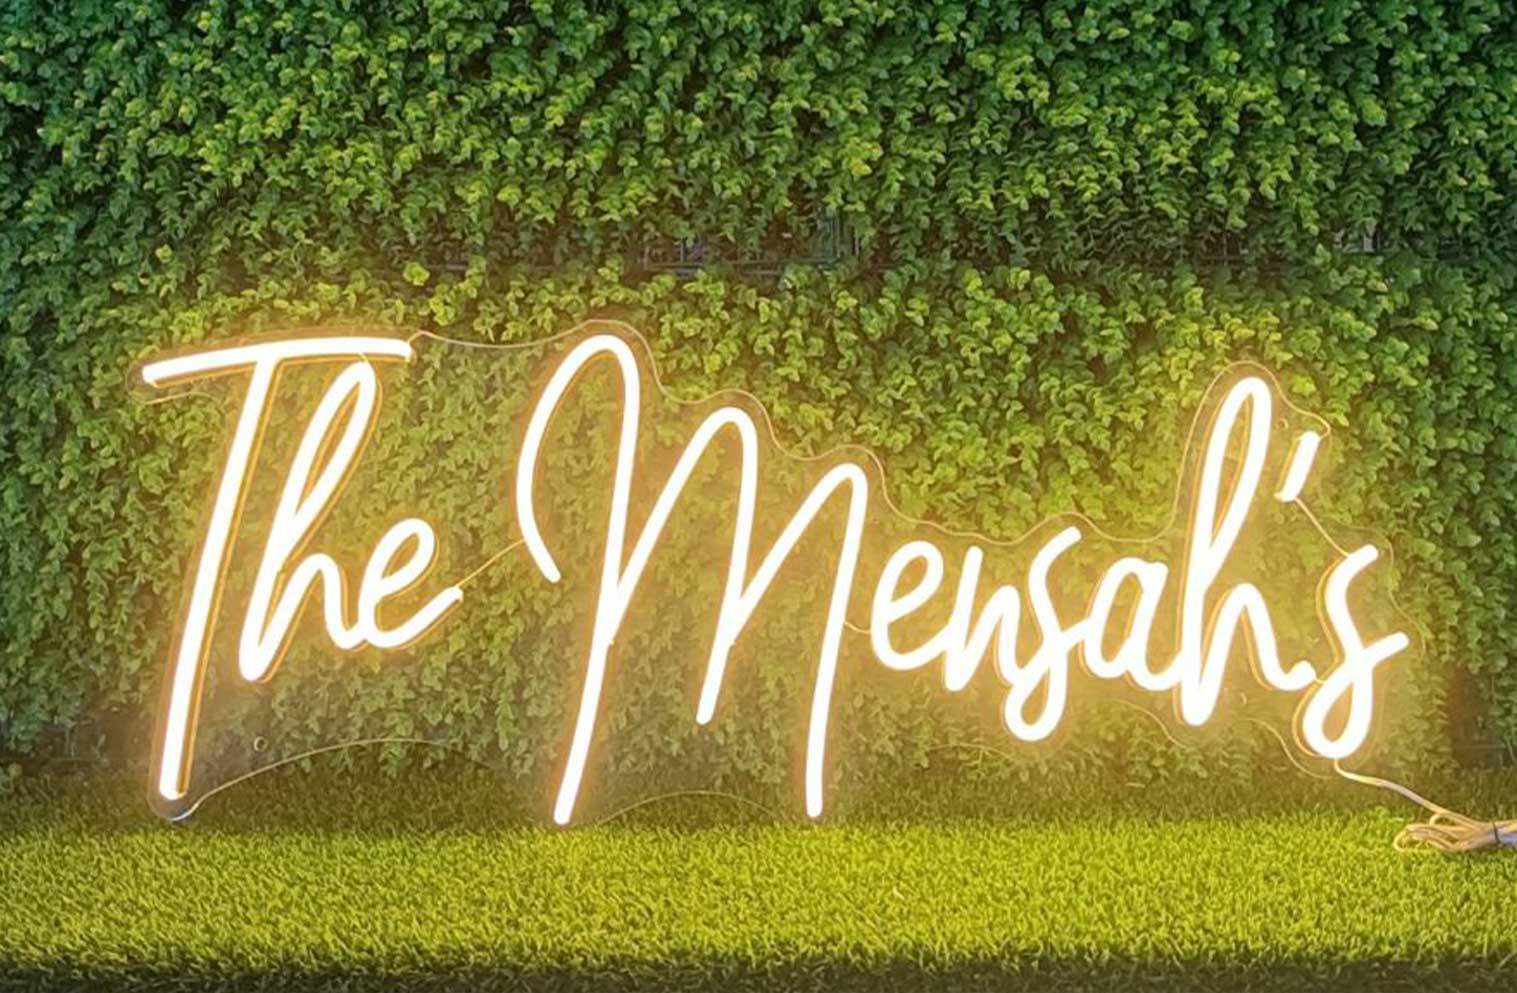 The mensah's